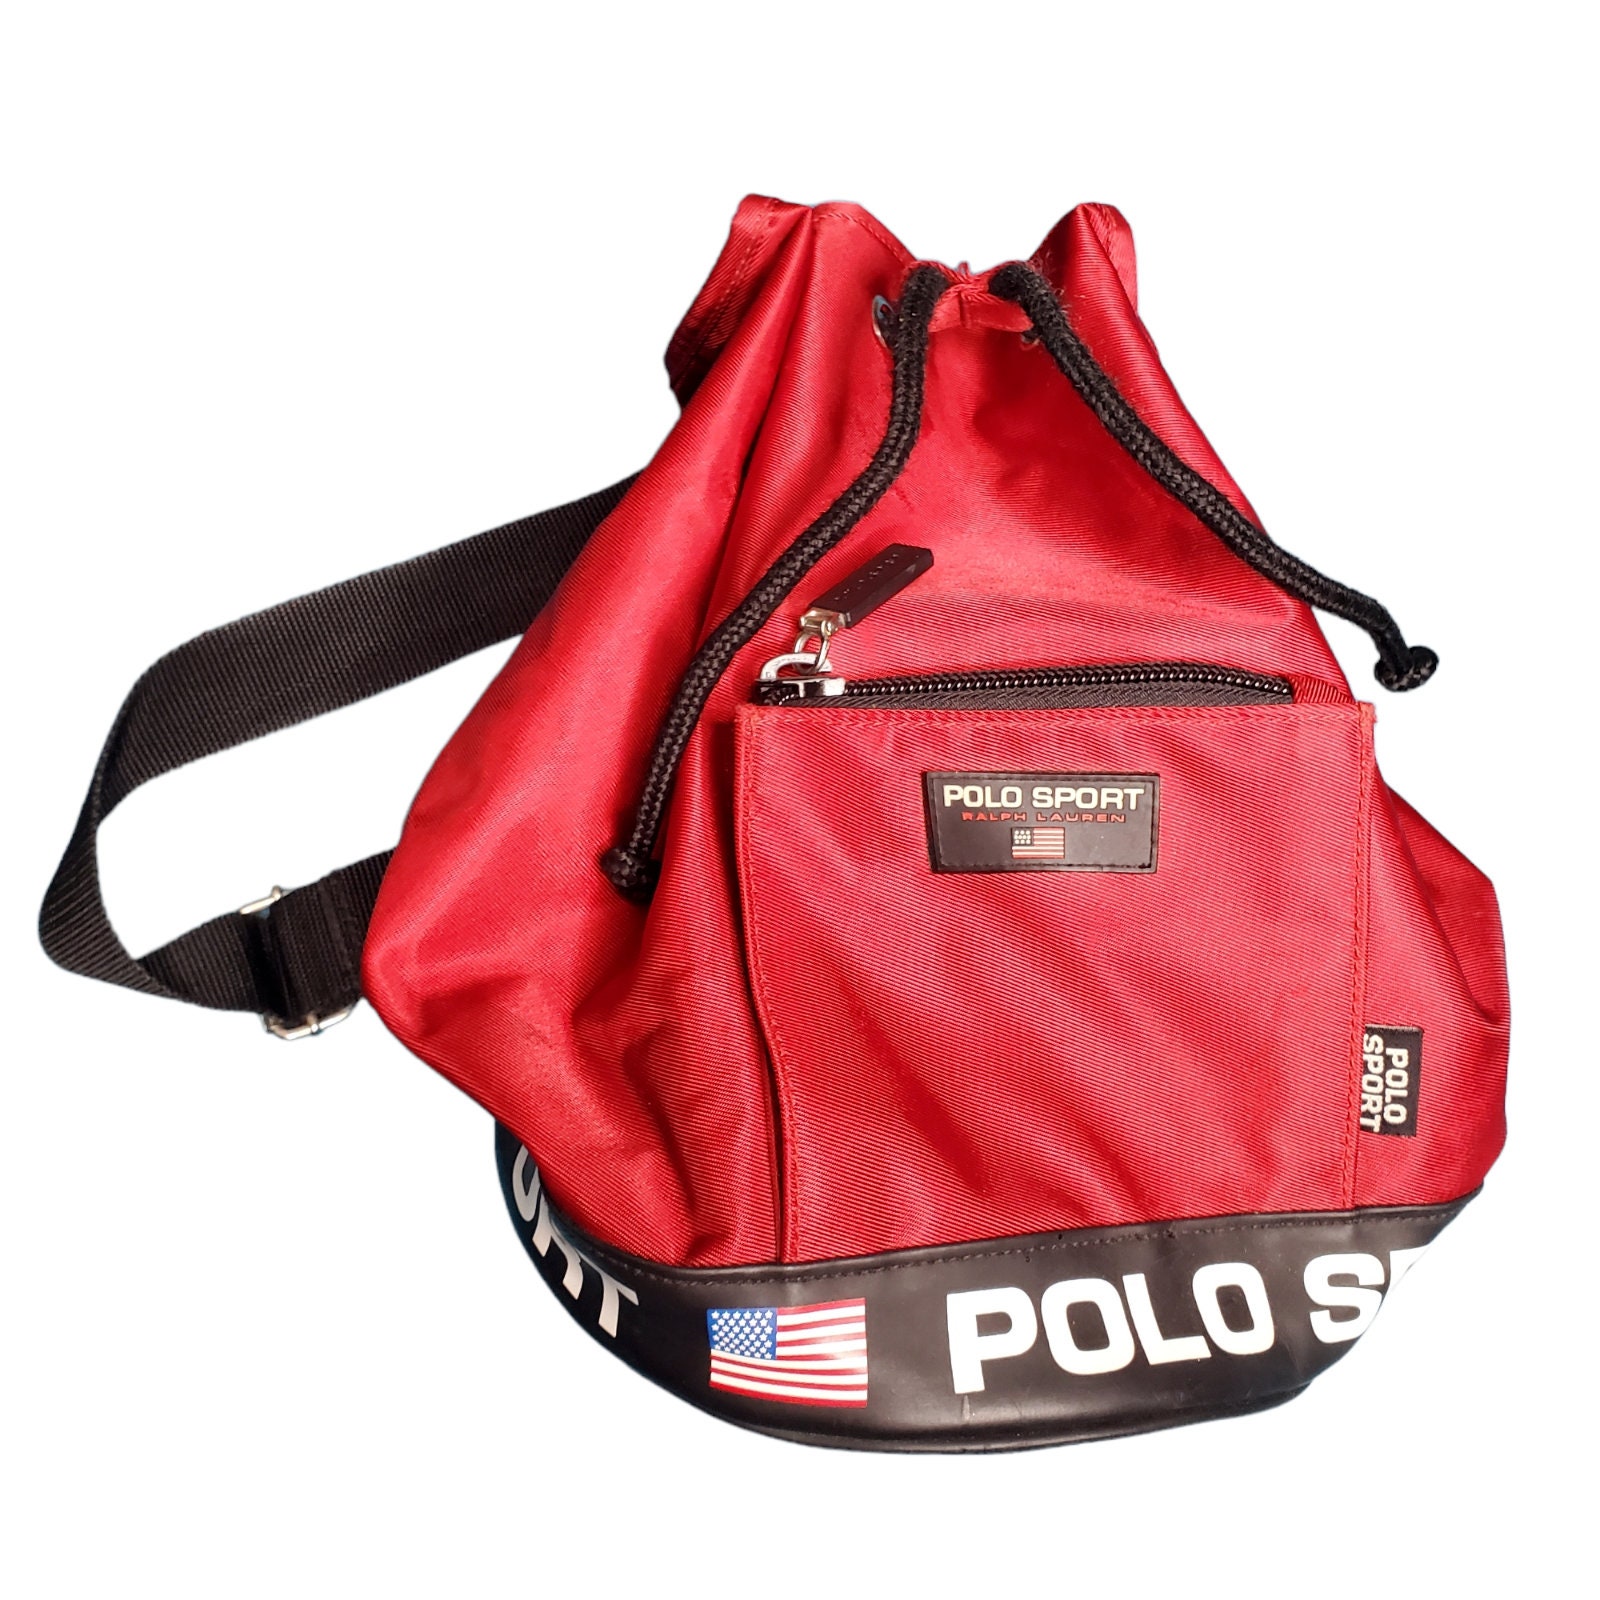 Alexander Graham Bell Frons plastic Polo sport bag - Etsy Nederland